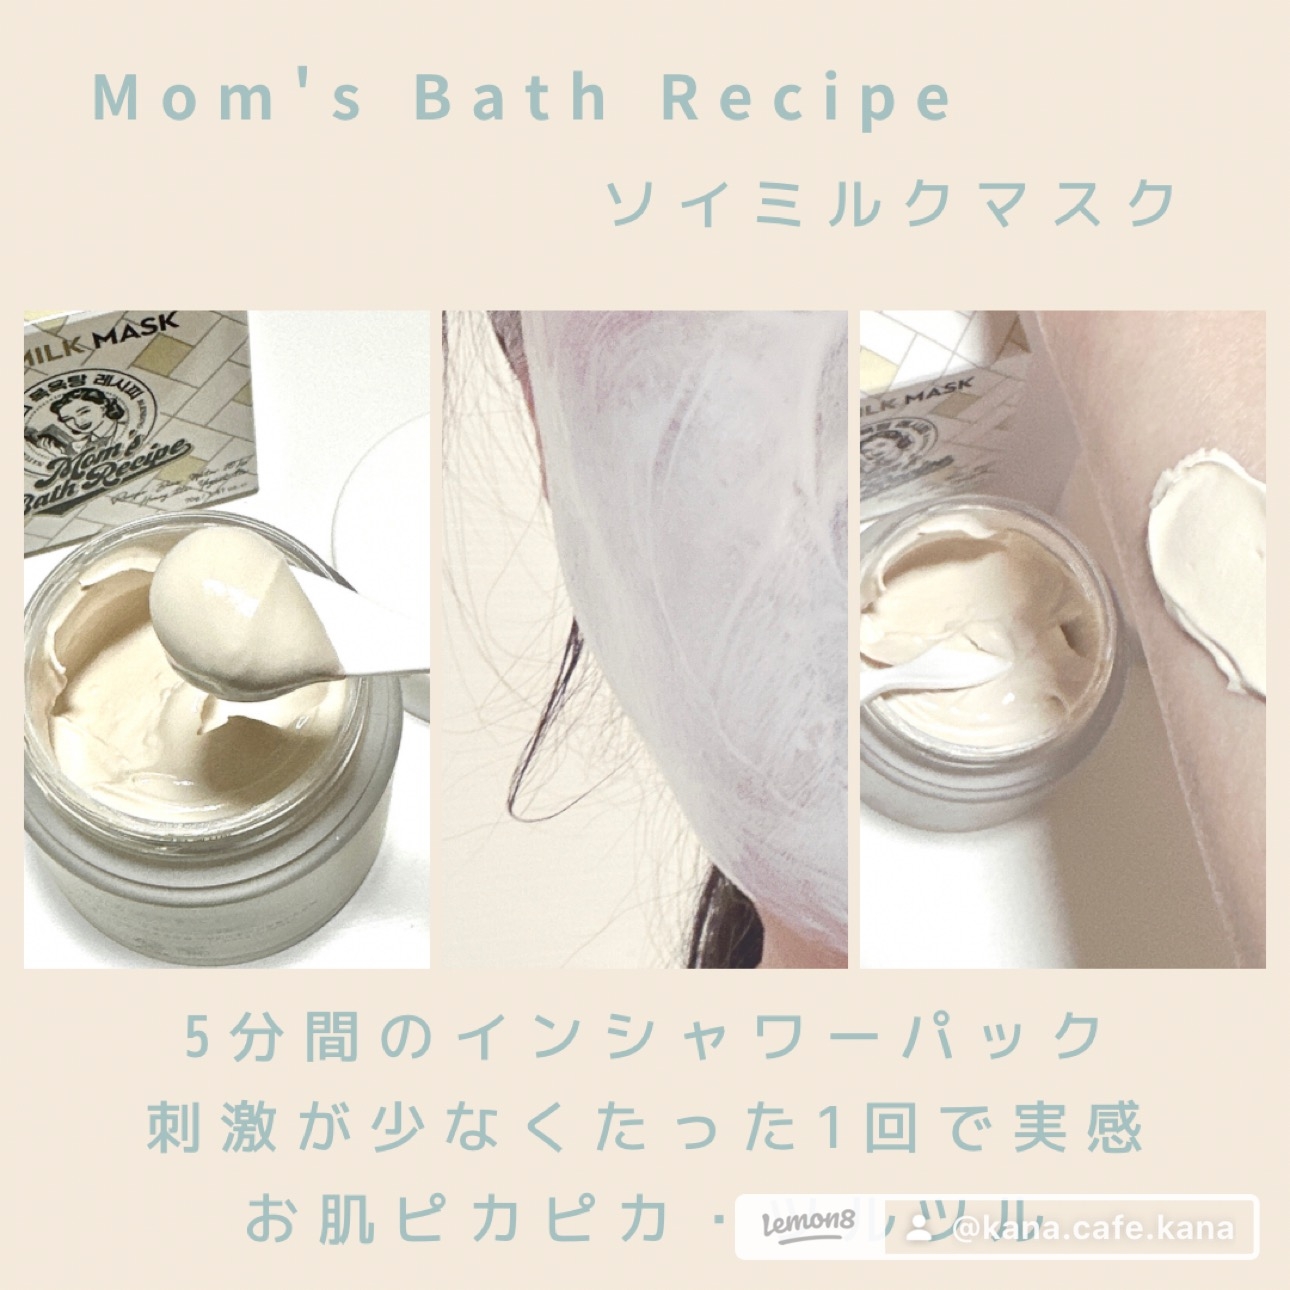 Mom's Bath Recipe(マムズバスレシピ) ソイミルクマスクの良い点・メリットに関するkana_cafe_timeさんの口コミ画像2